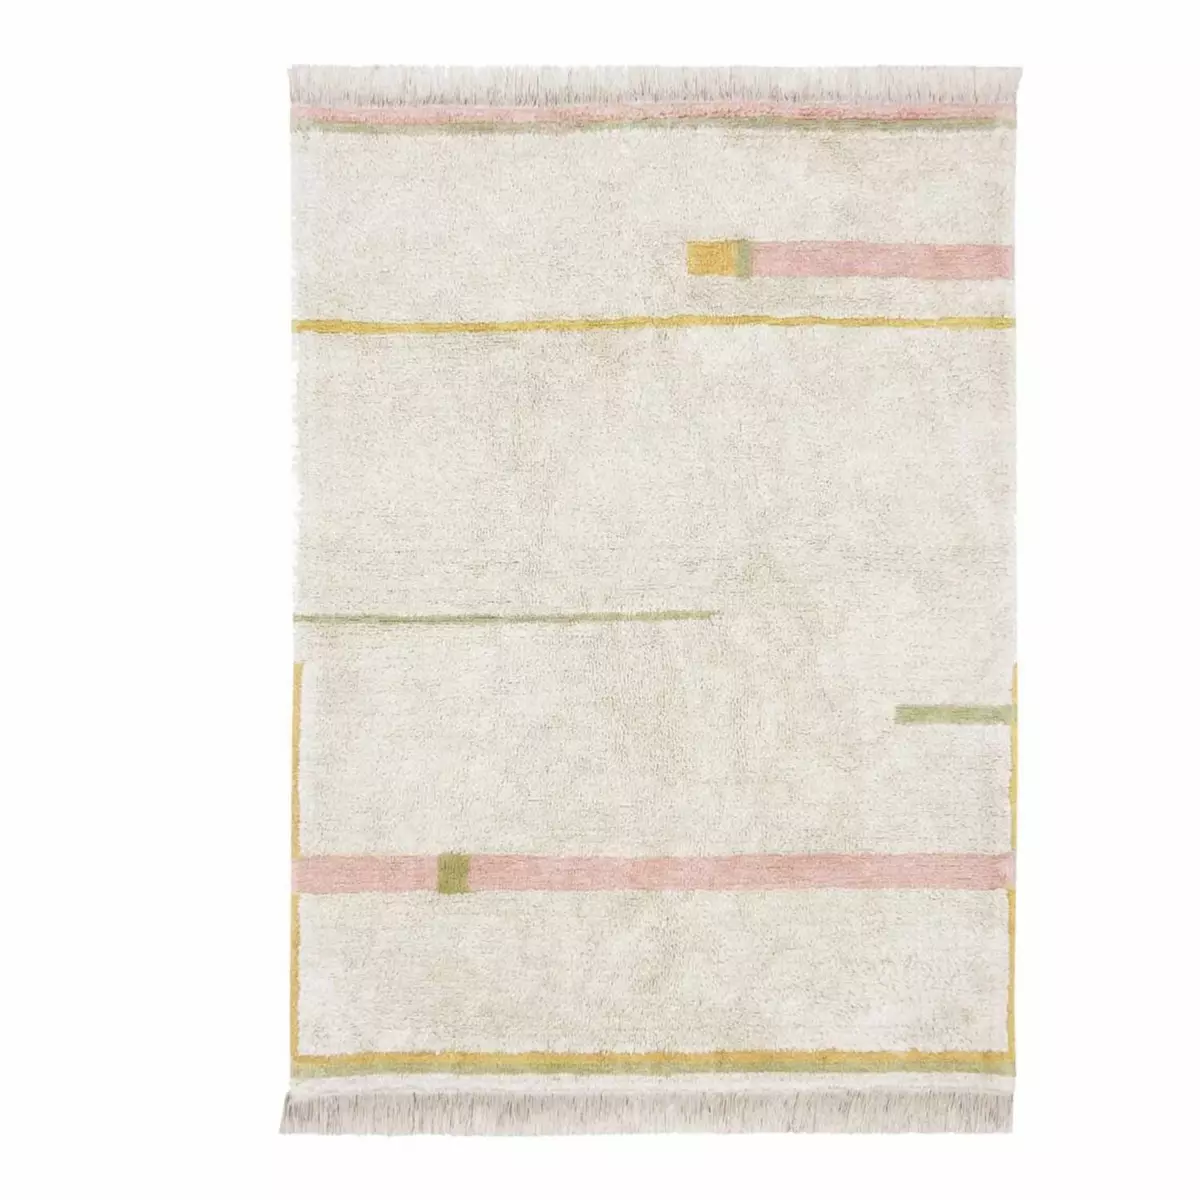 Lorena Canals Tapis lavable en coton - beige avec lignes rose et jaune - 140 x 200 cm